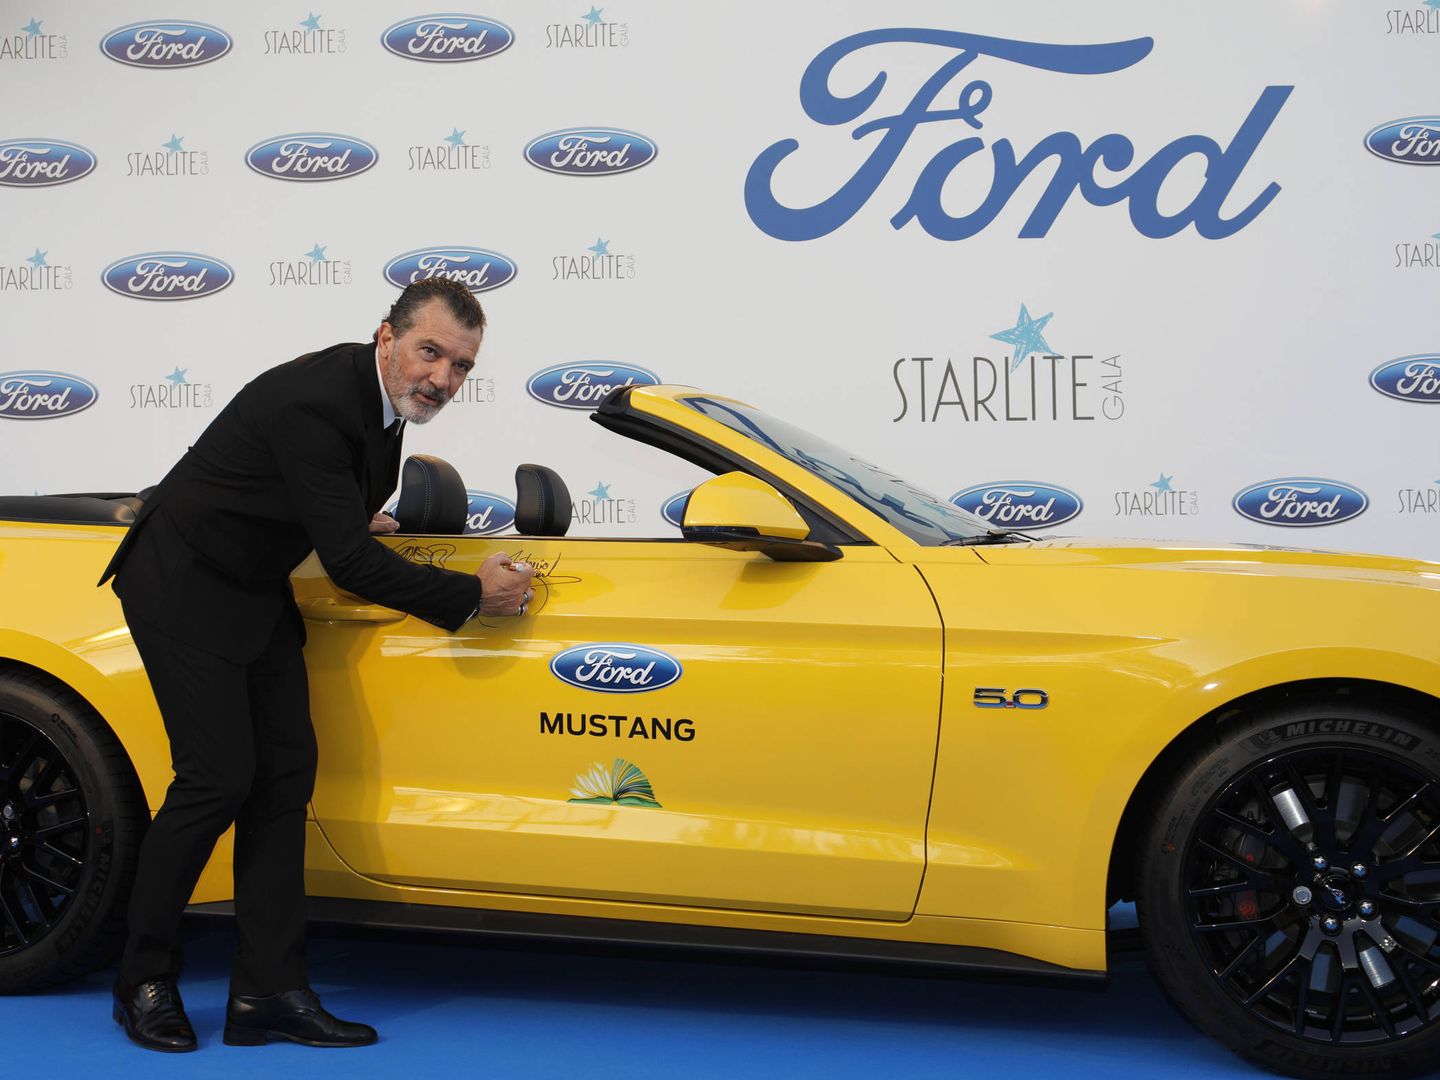  Antonio Banderas firmando un Ford Mustang.